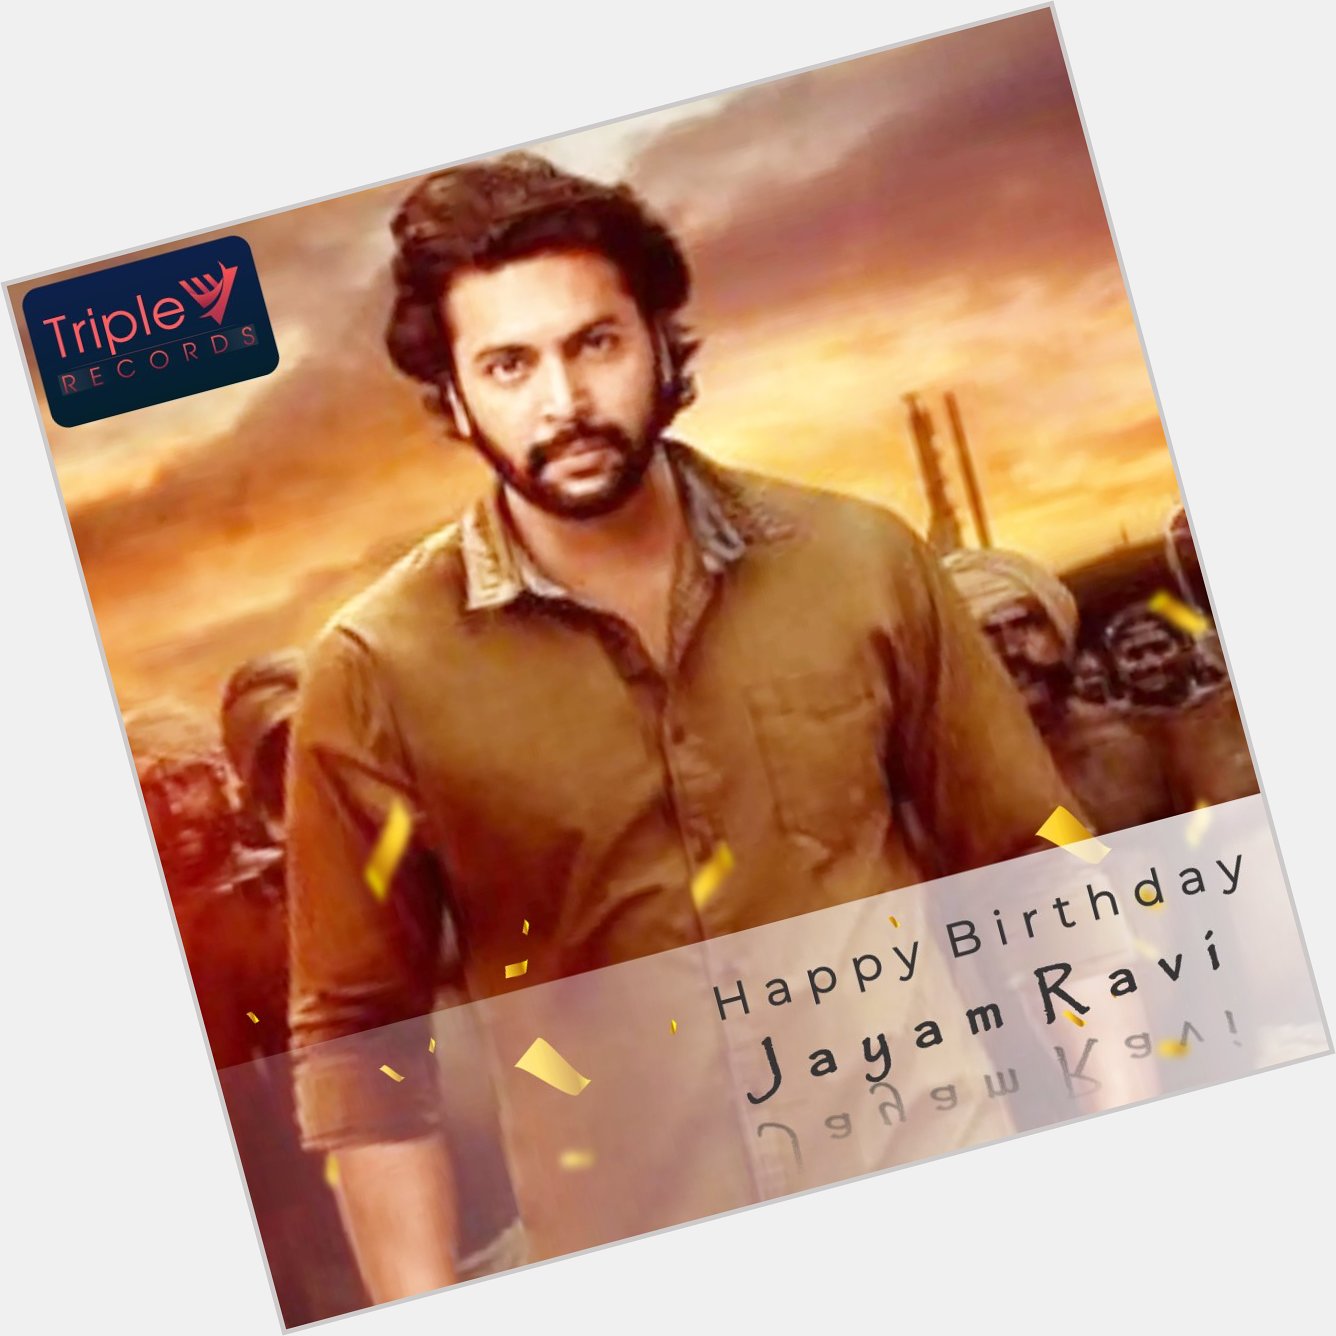 Wishing Jayam Ravi a Very Happy Birthday! 
.   